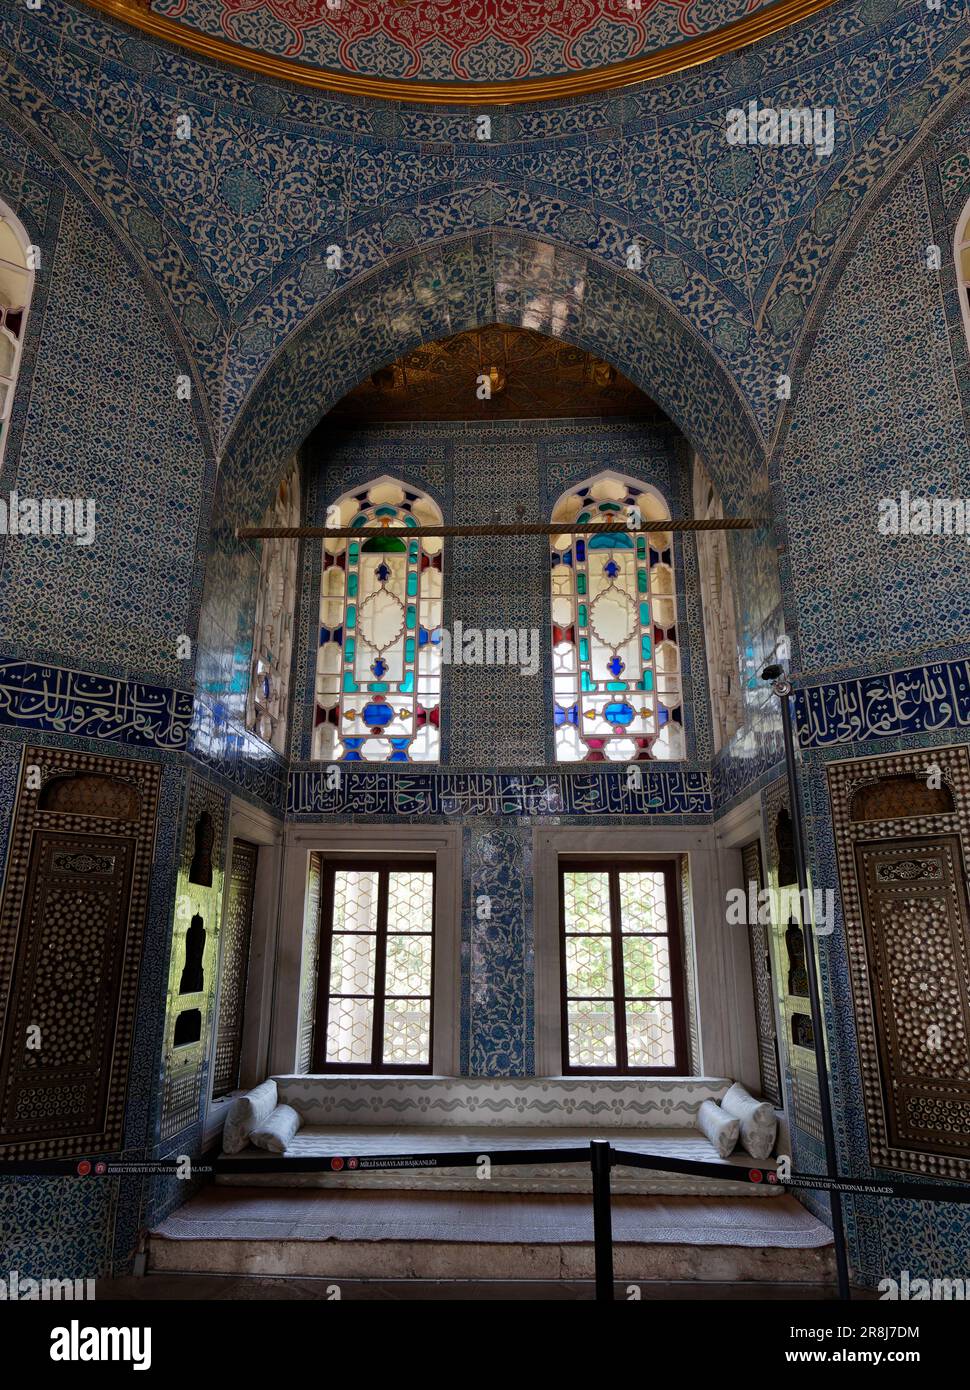 Elegante habitación dentro del Palacio Topkapi con azulejos azules y blancos, vidrieras, distrito de Fatih, Estambul, Turquía Foto de stock